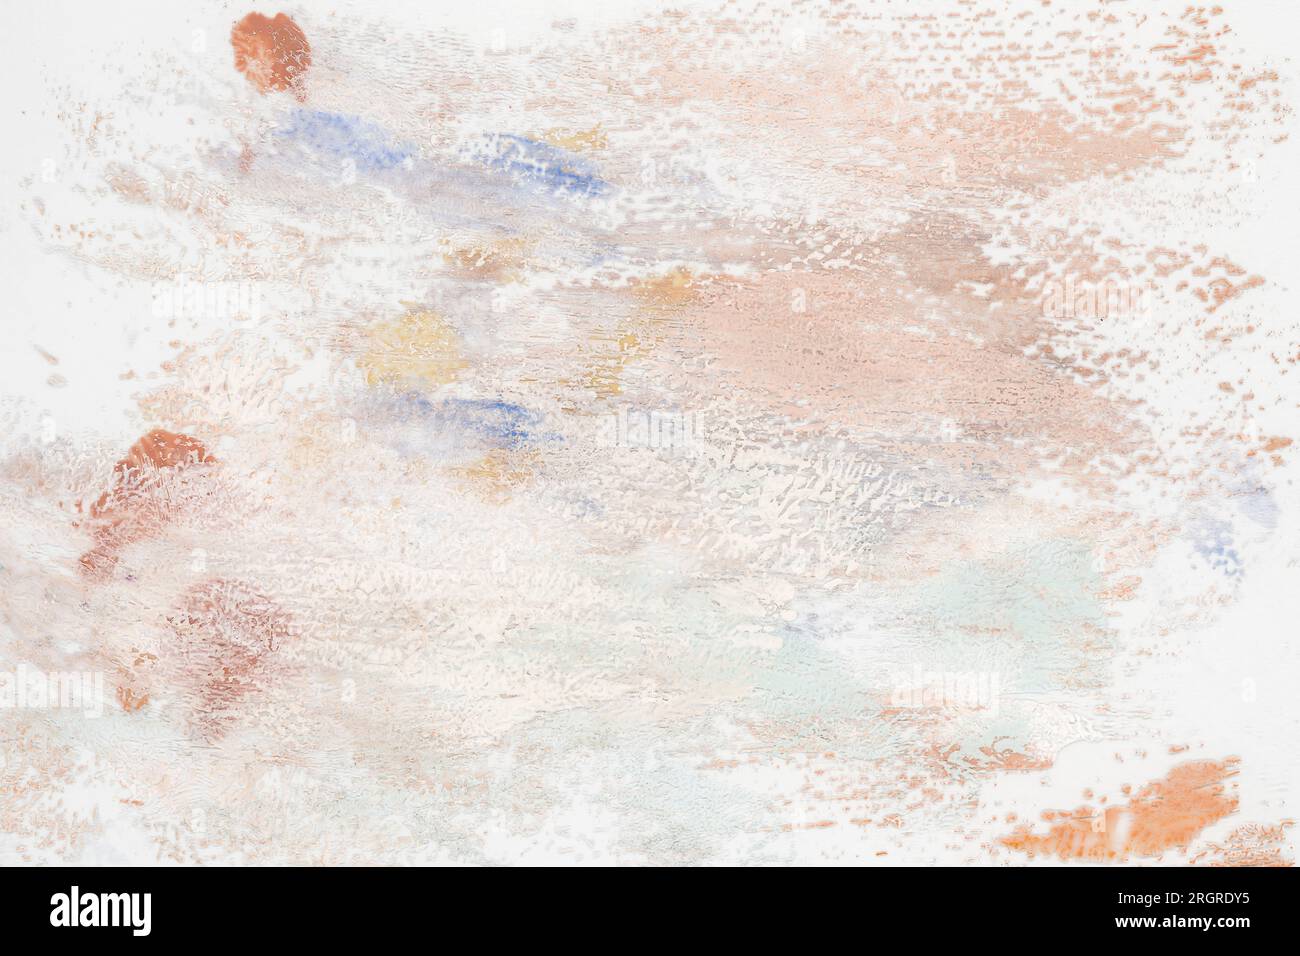 Peinture aquarelle beige abstraite avec pinceau grunge dans la couleur de ton de terre, fond de texture de papier aquarelle Banque D'Images